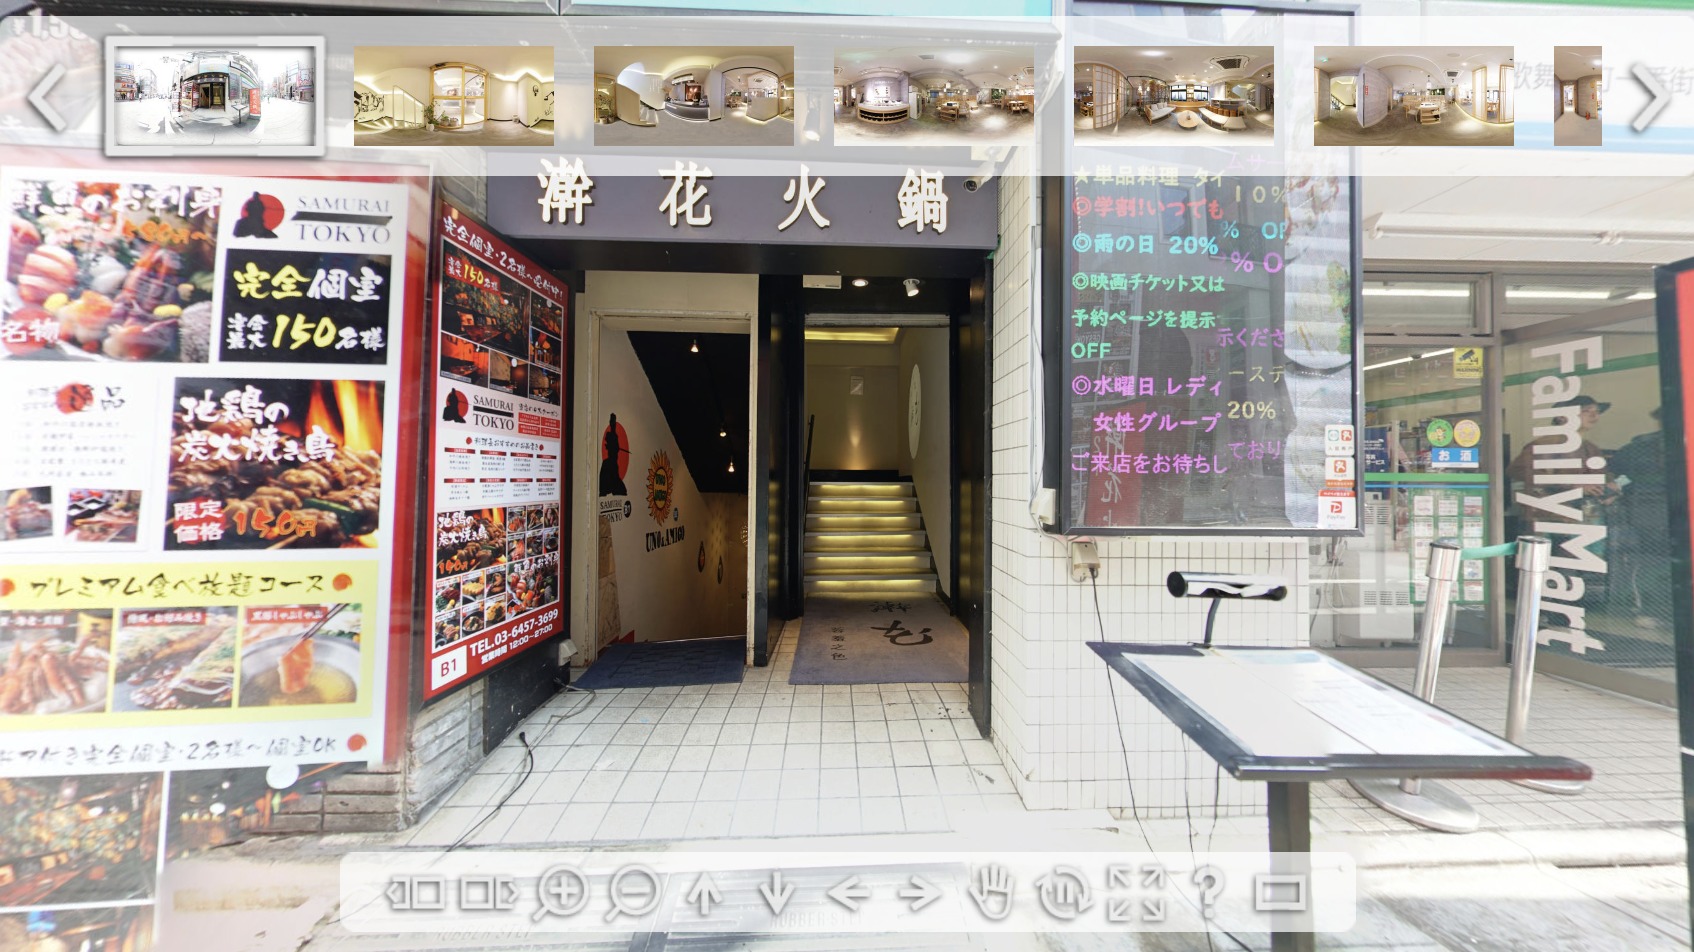 【火鍋『KANKA』新宿店 様 飲食店】360°パノラマ撮影・制作実績詳細ページ